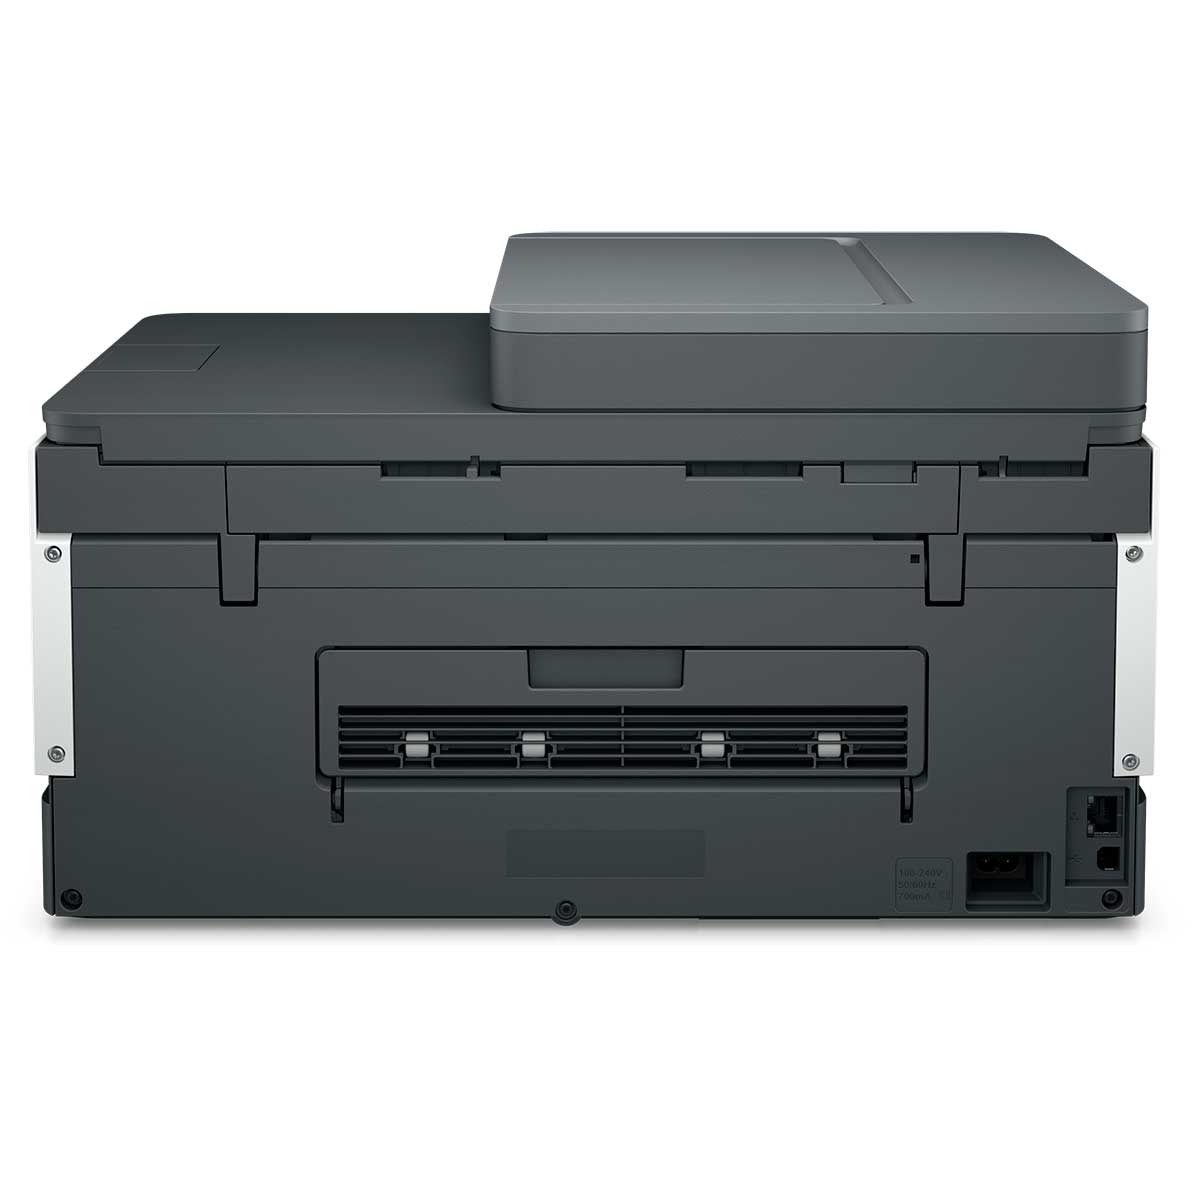 impressora-multifuncional-hp-smart-tank-754-tanque-de-tinta-colorida-scanner-duplex-wi-fi-usb-bluetooth-bivolt---2h0a6a-5.jpg